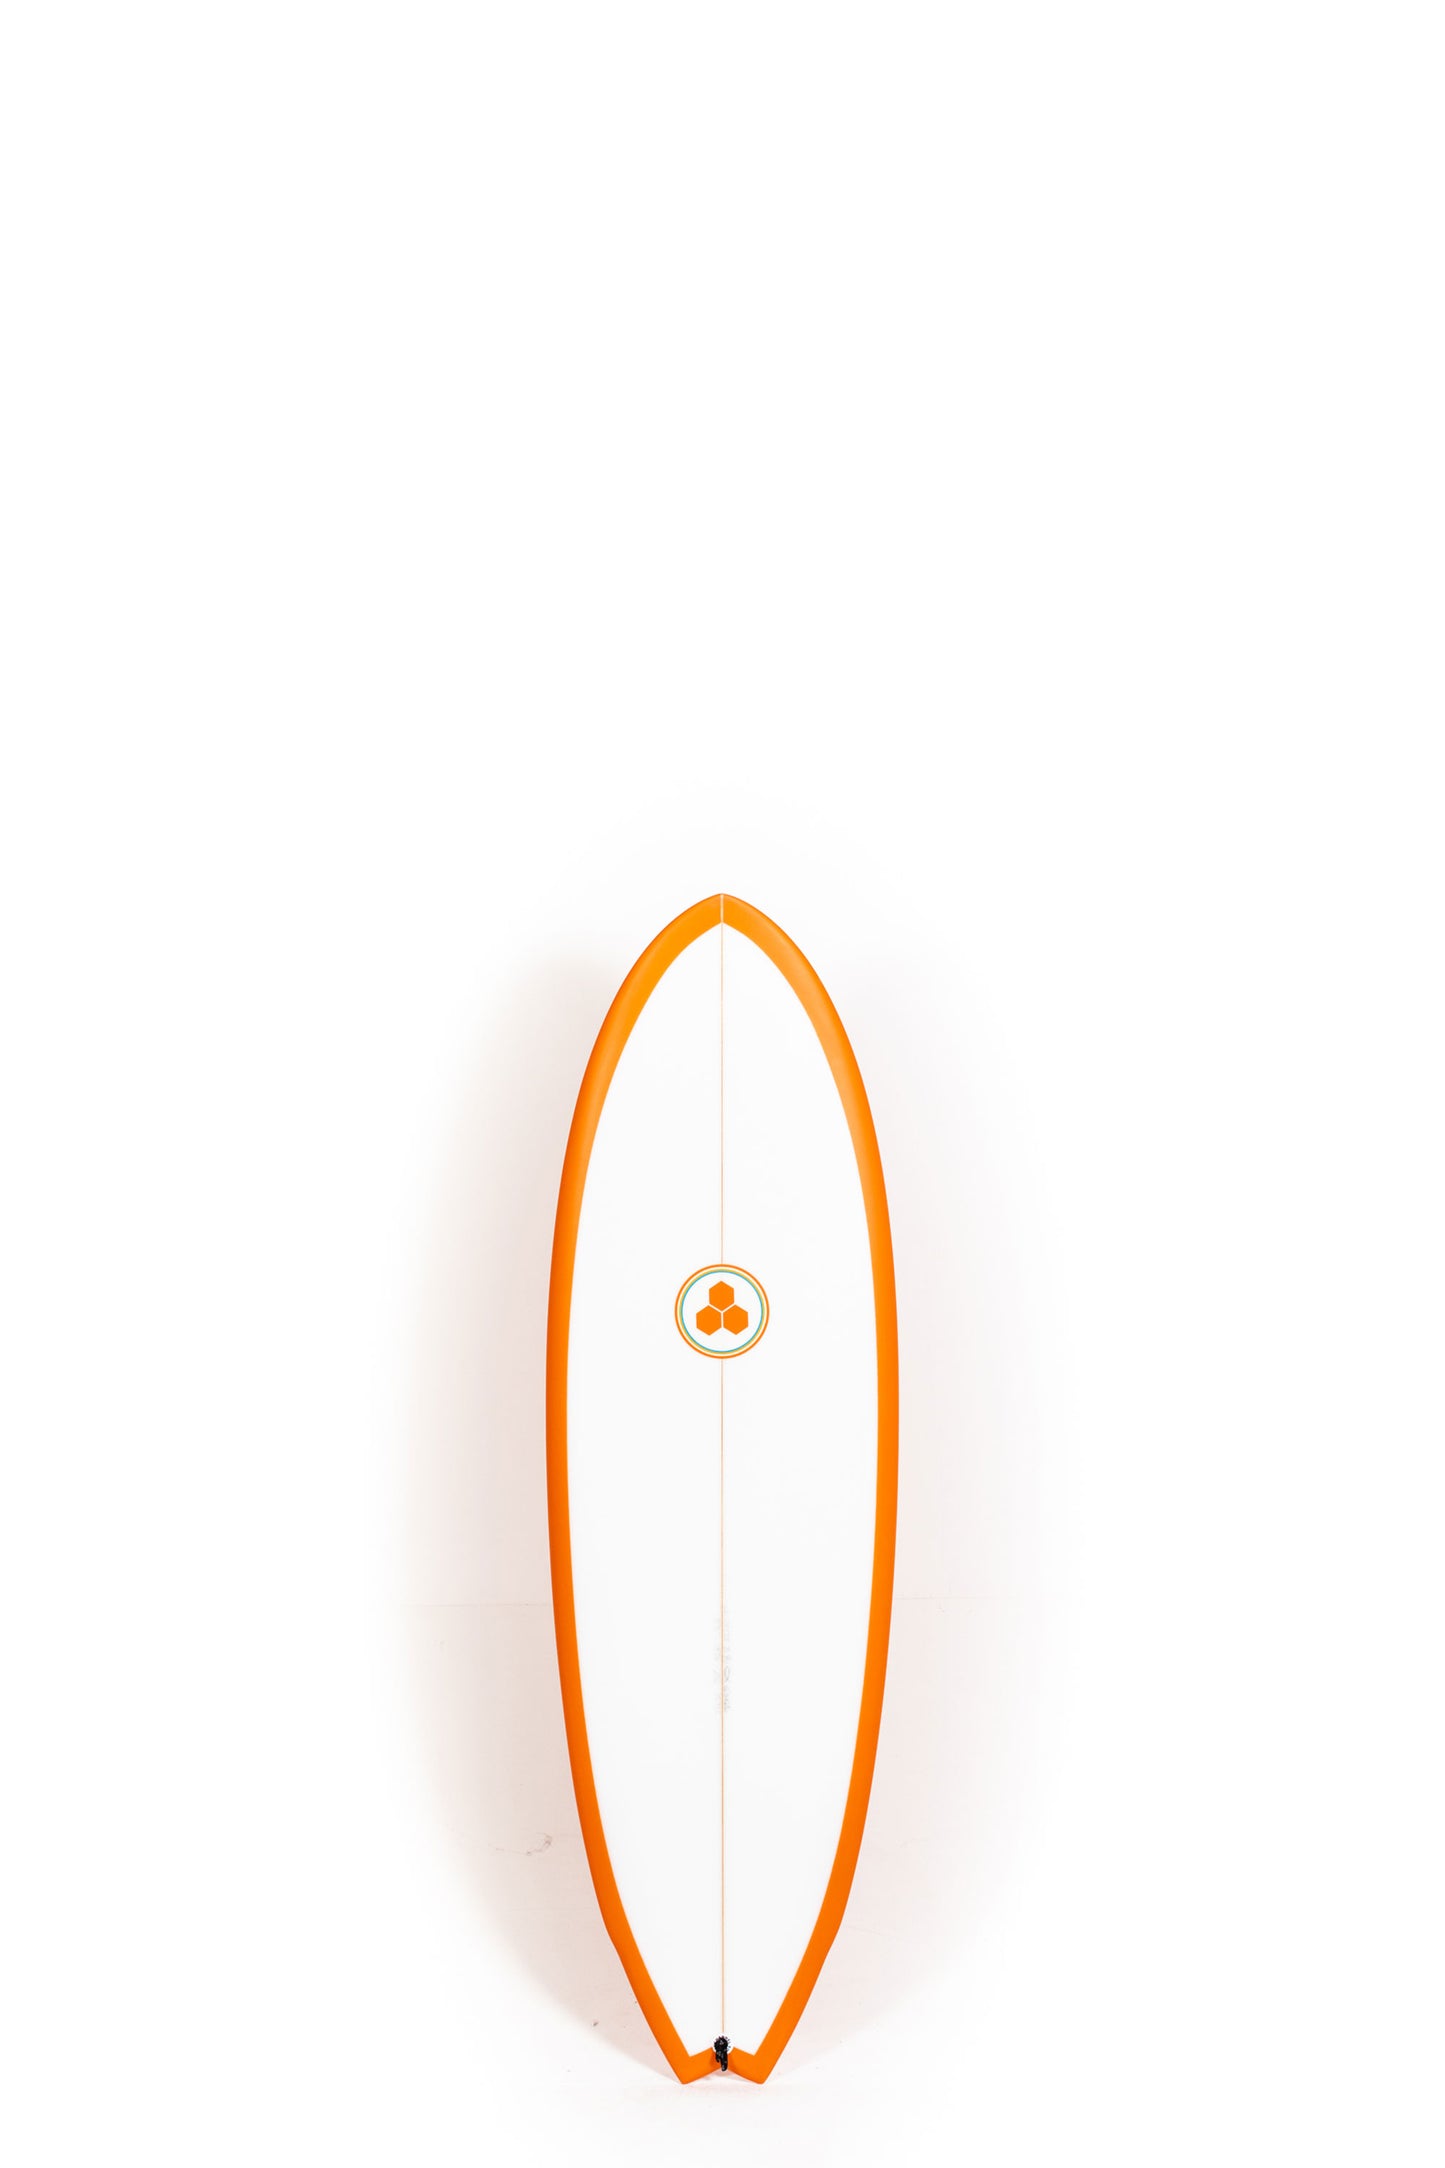 Pukas Surf Shop - Channel Islands - G-Skate by Al Merrick - 5'3" x 18 7/8 x 2 5/16 - 25.9L - CI28735